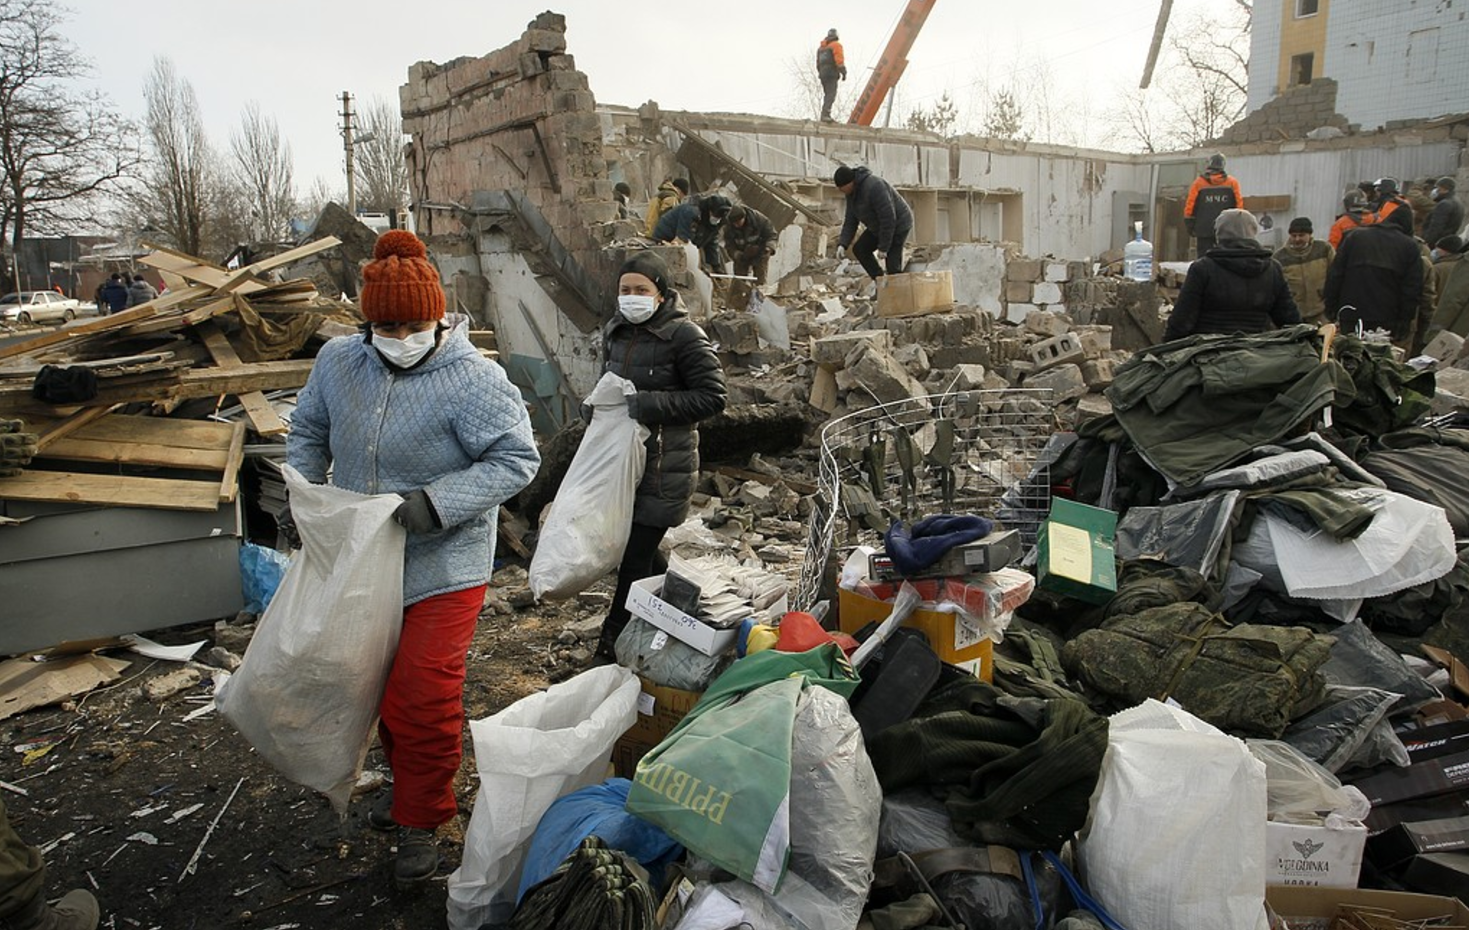 Människor samlar ihop sina tillhörigheter i ruinerna av en byggnad i Donetsk som träffades av granatbeskjutning i februari i år, då både regerings- och rebellkontrollerade områden utsattes för beskjutning.